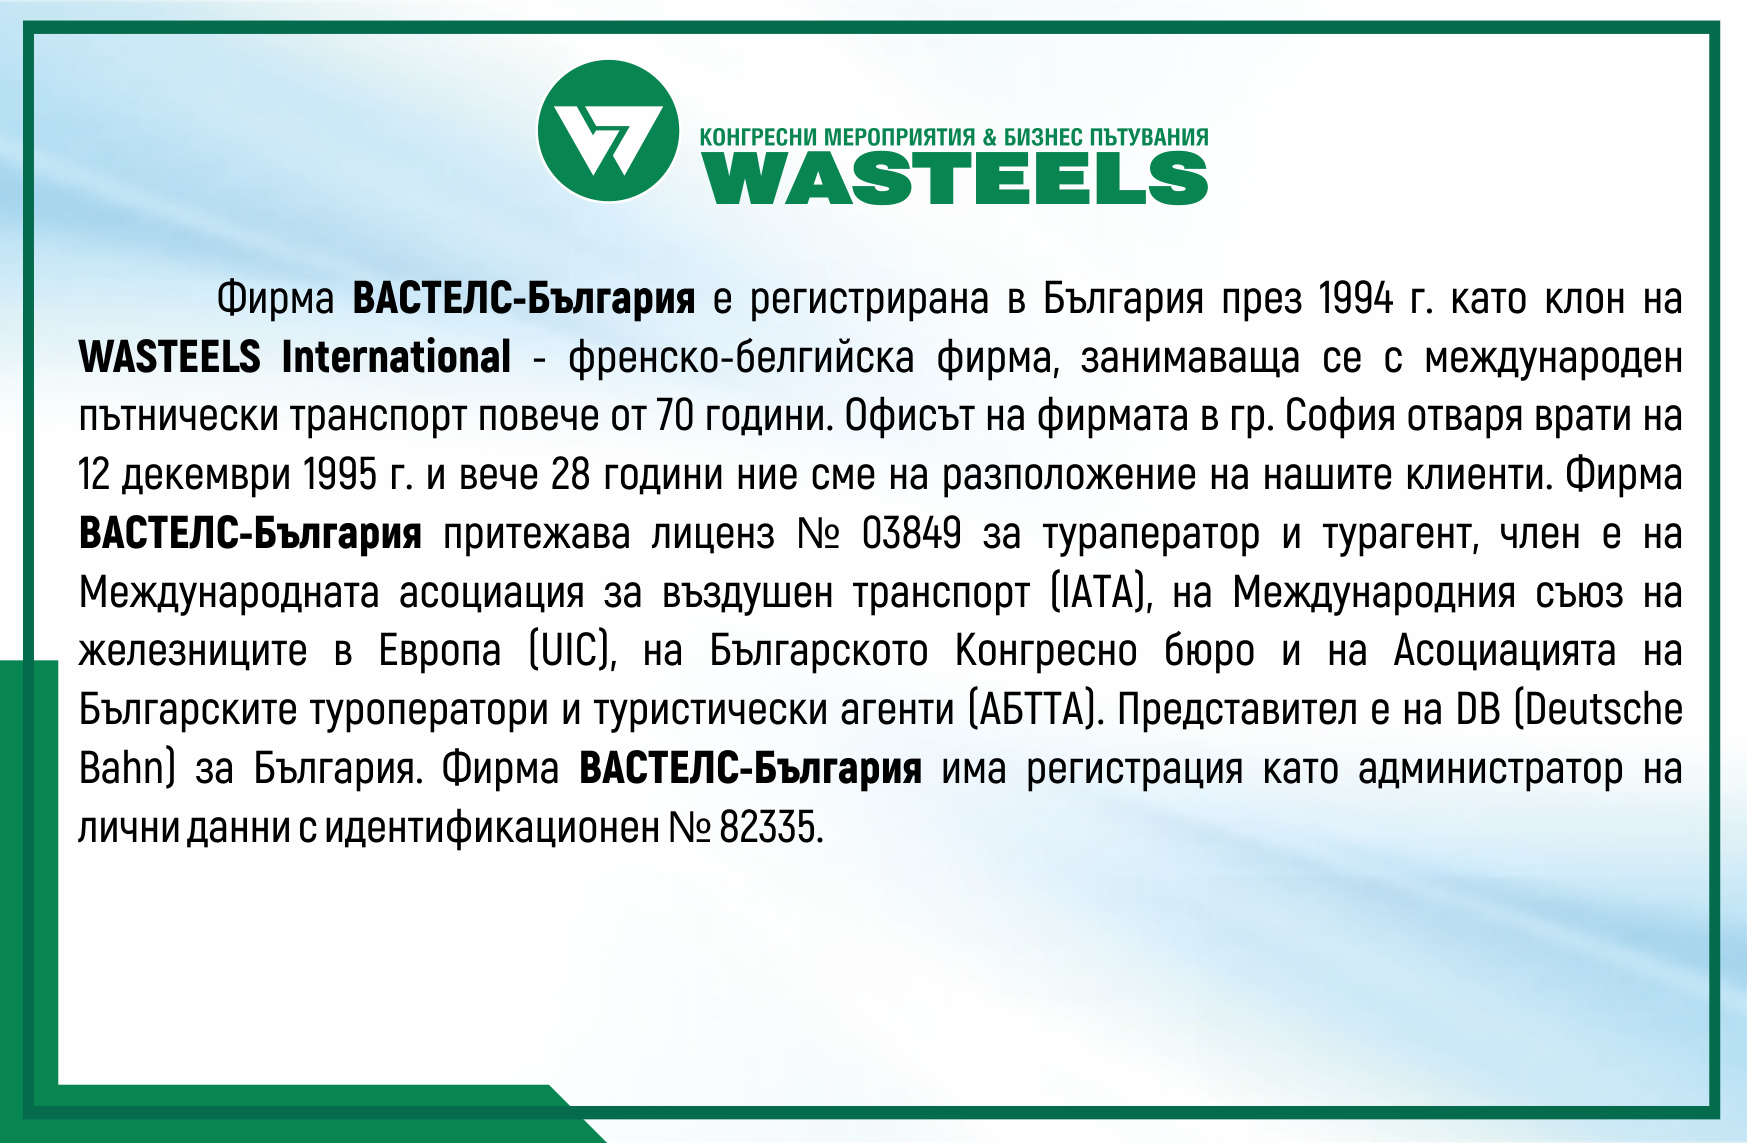 Информация за Вастелс-България